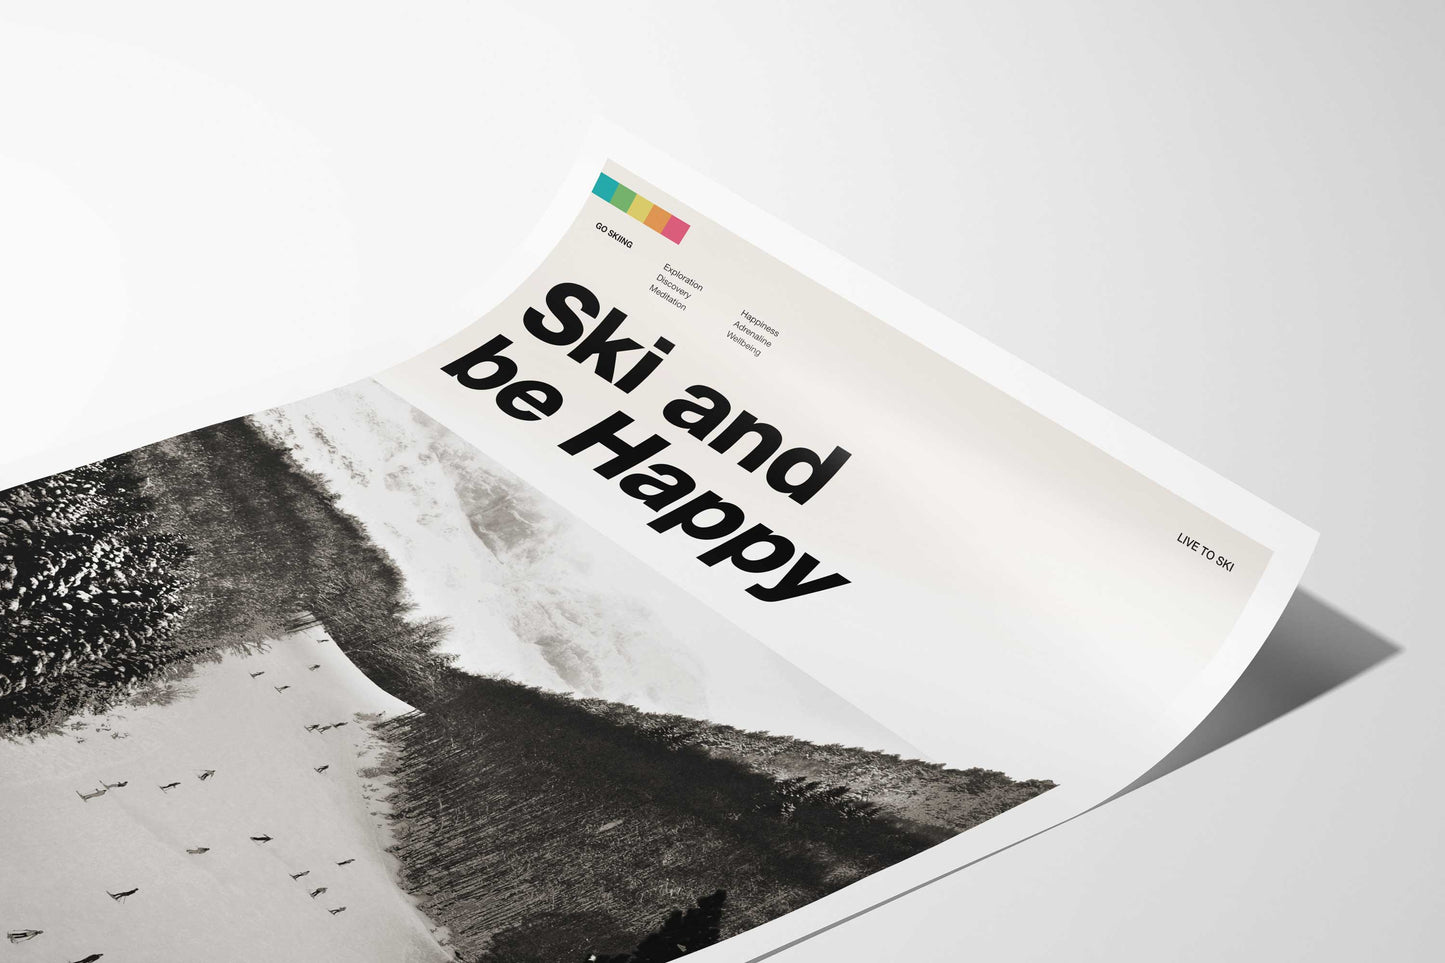 Ski and Be Happy Art Print